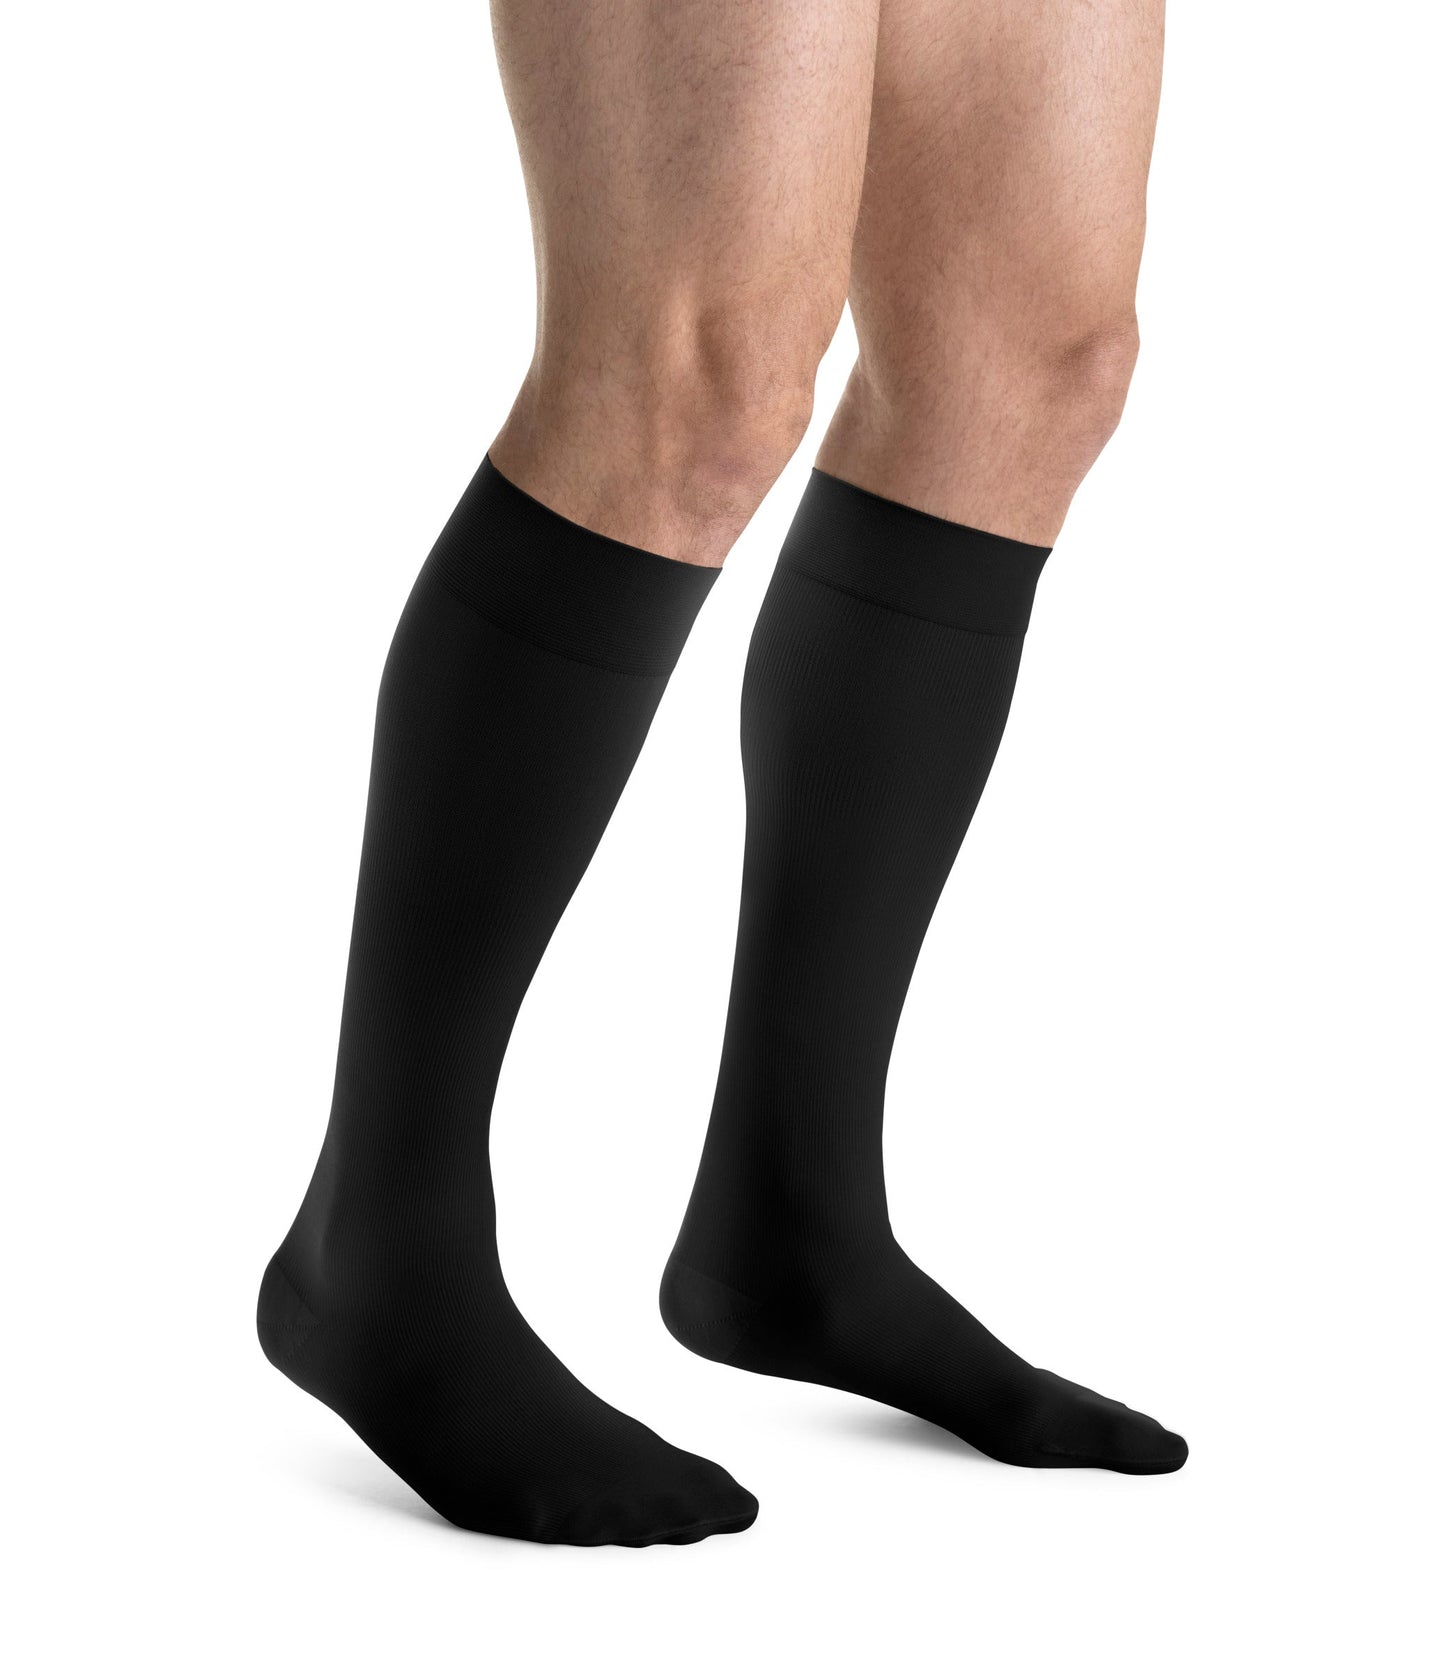 JOBST forMen Compression Socks 20-30 mmHg Knee High Tall Closed Toe